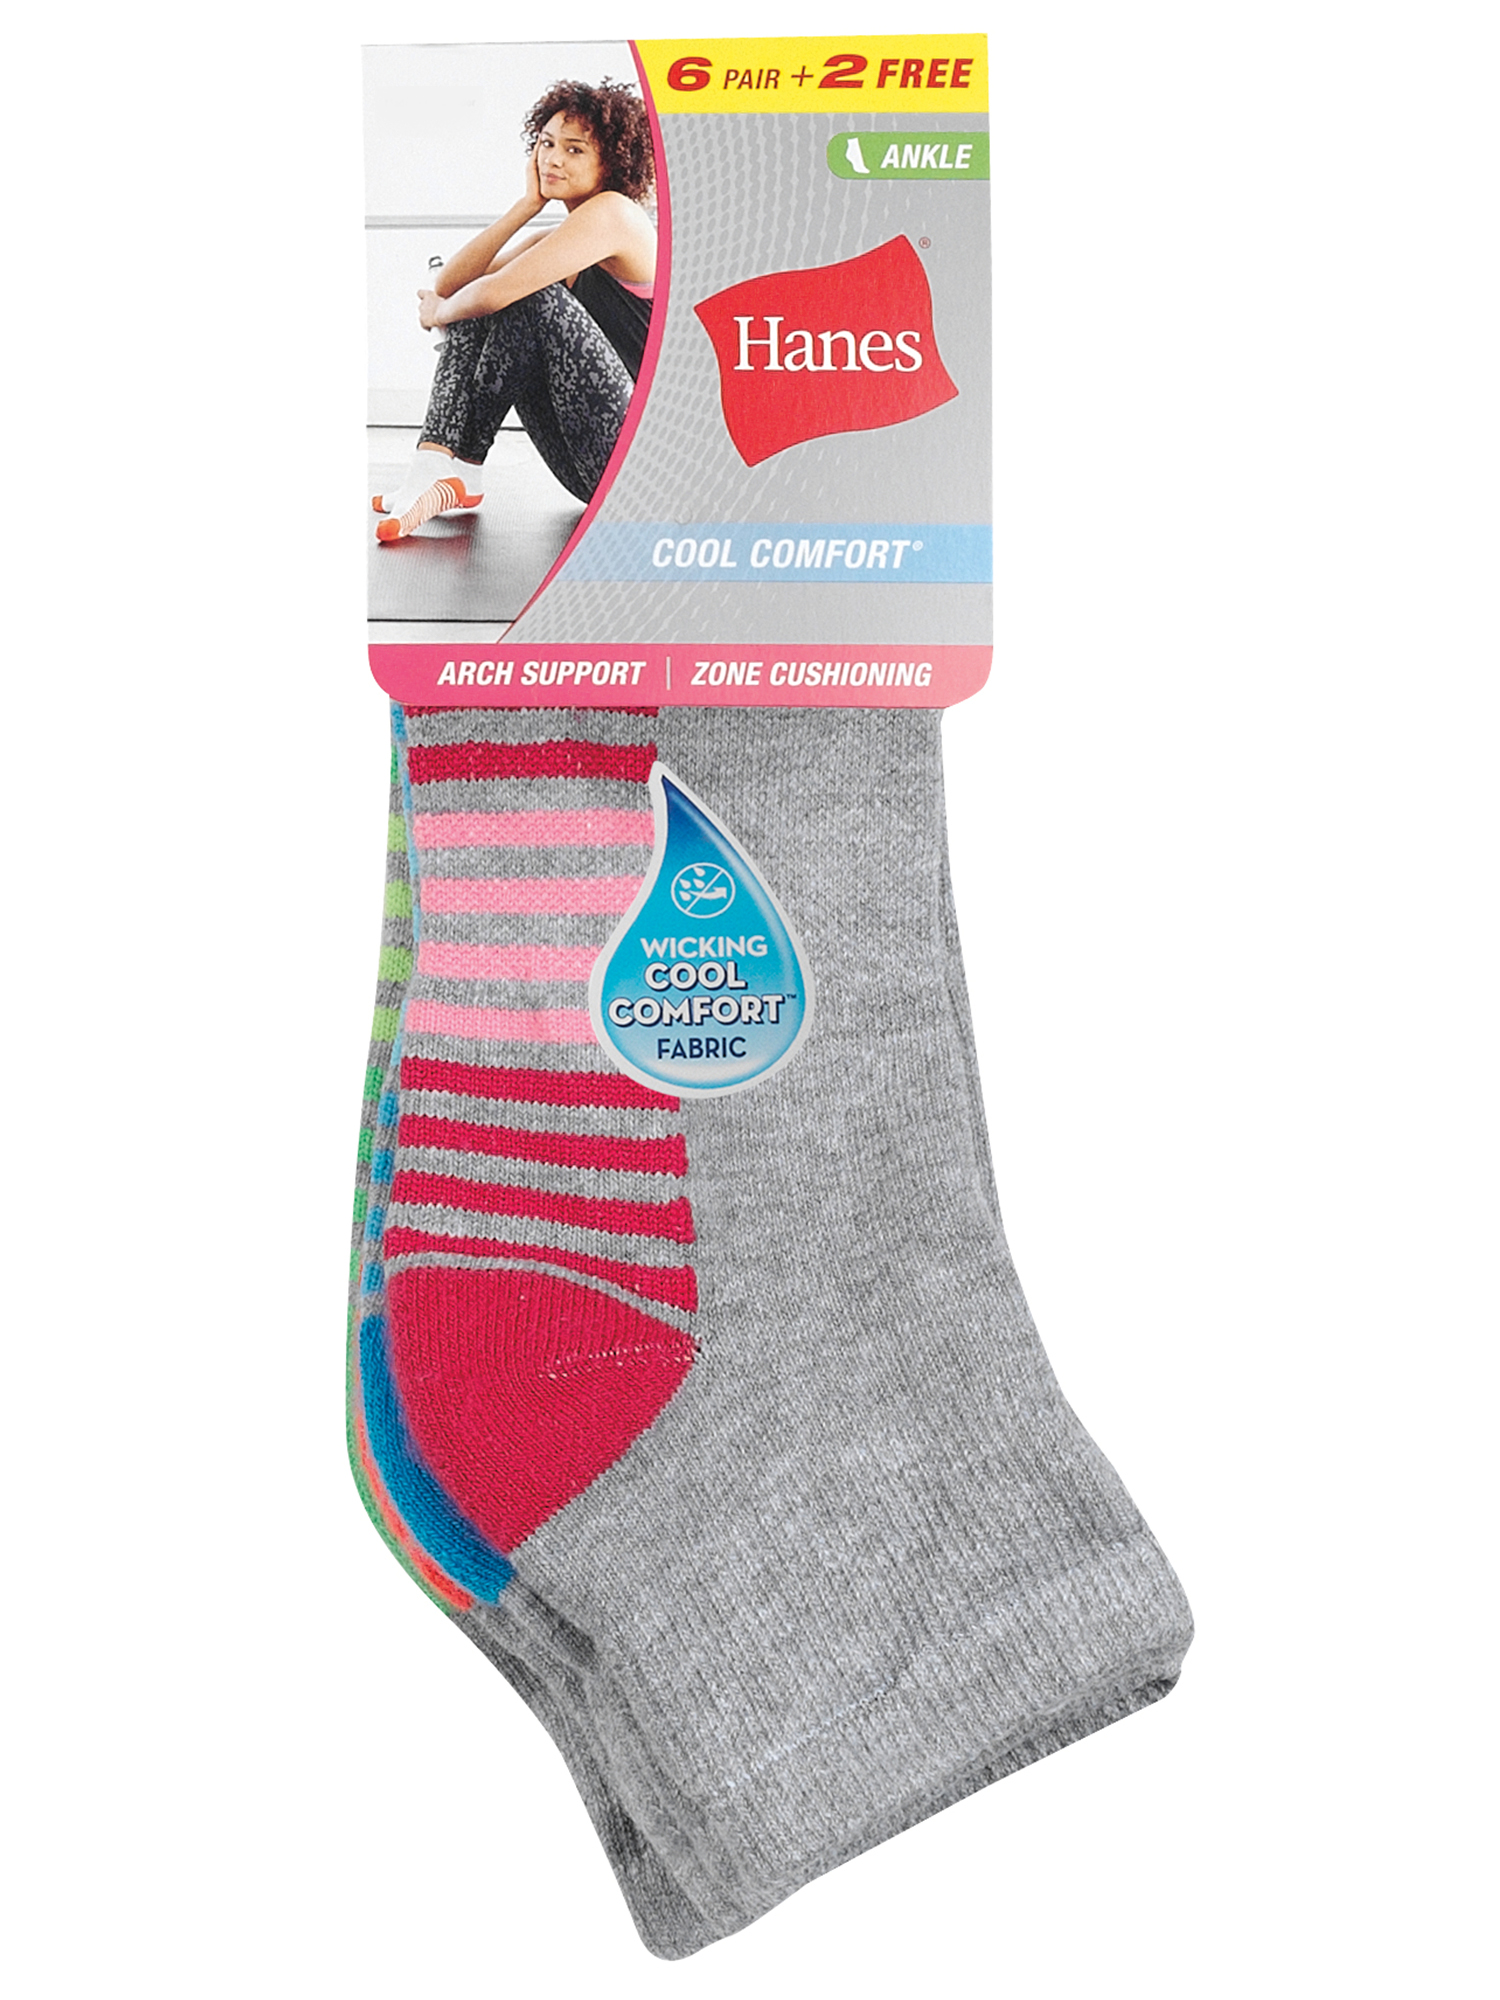 Hanes sport cool comfort ankle socks (women's), 6+2 bonus pack - image 4 of 4